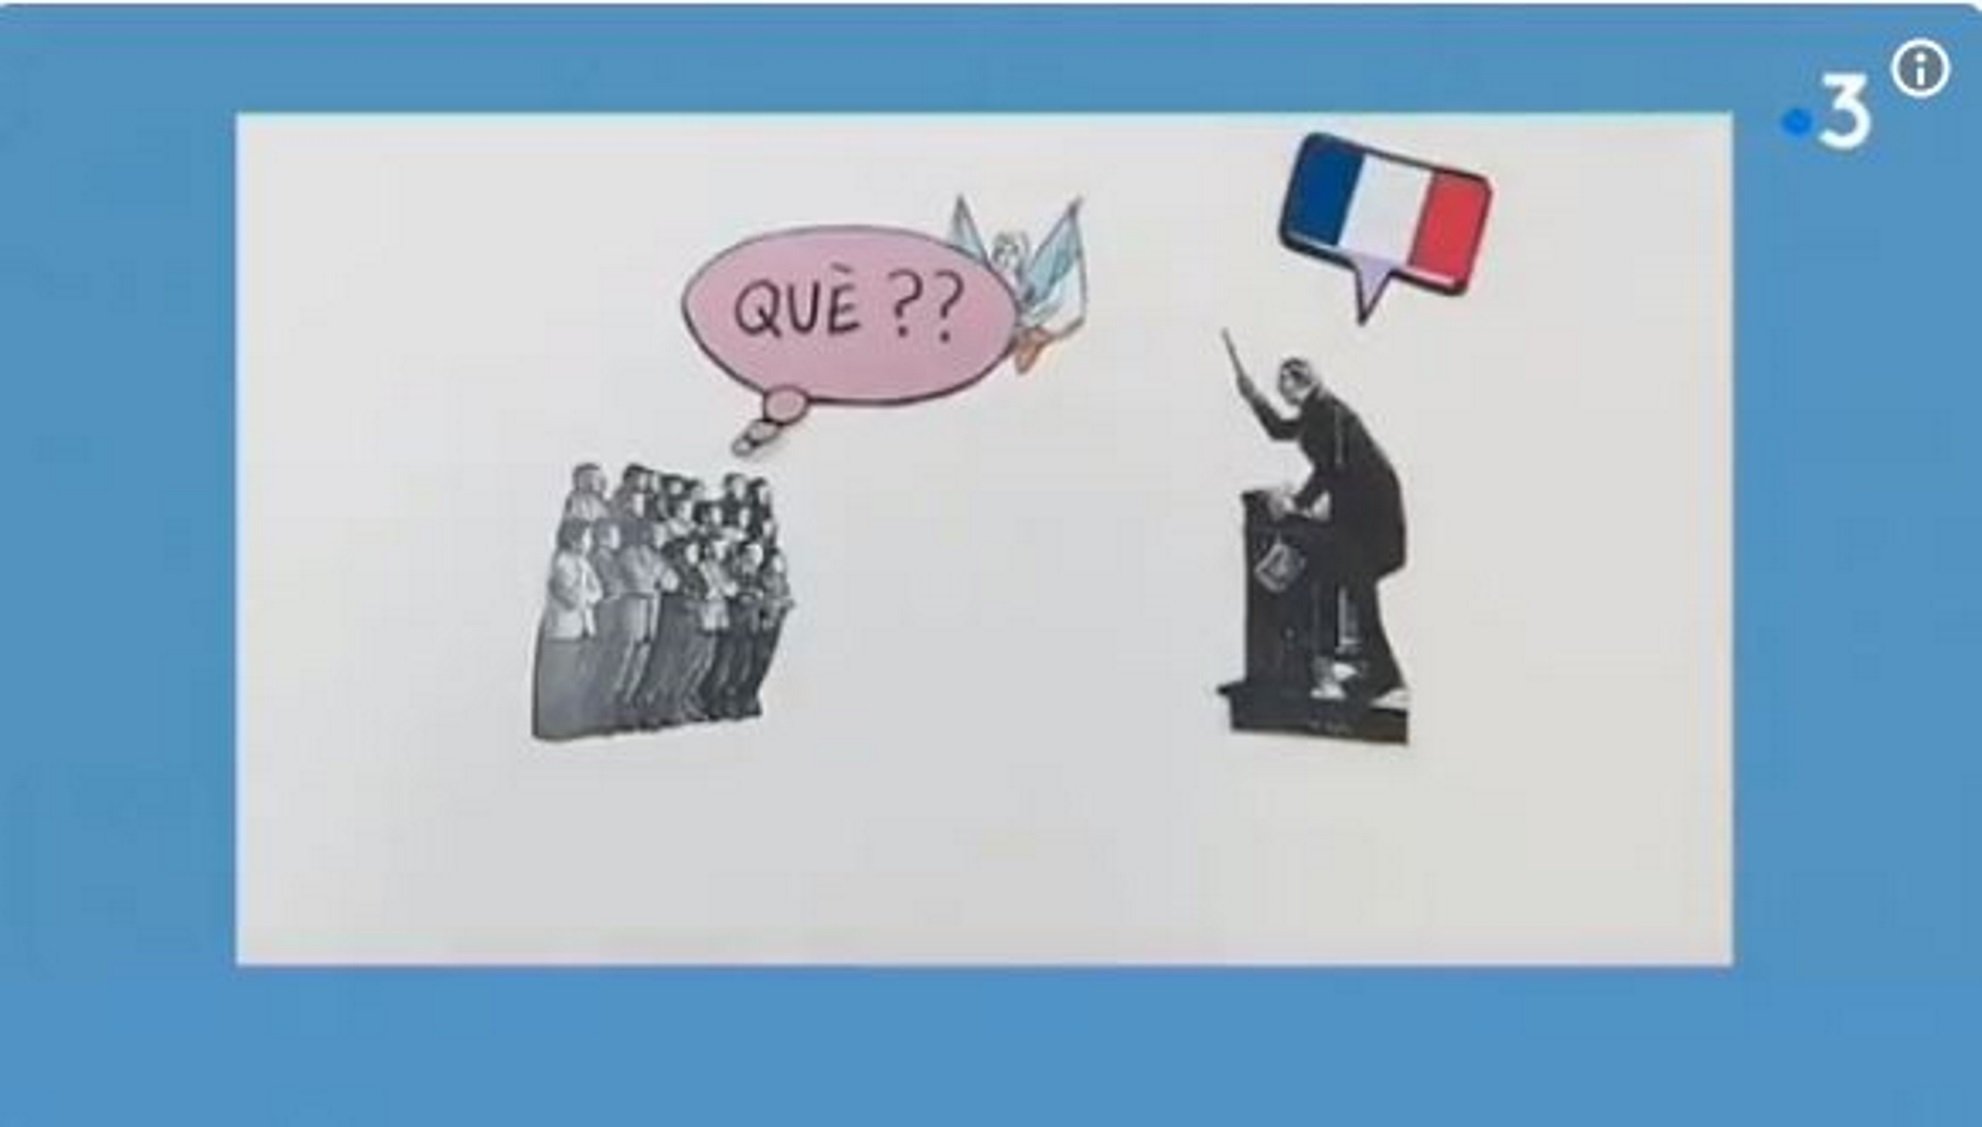 VÍDEO: France3 denuncia la persecución histórica del catalán en la escuela francesa